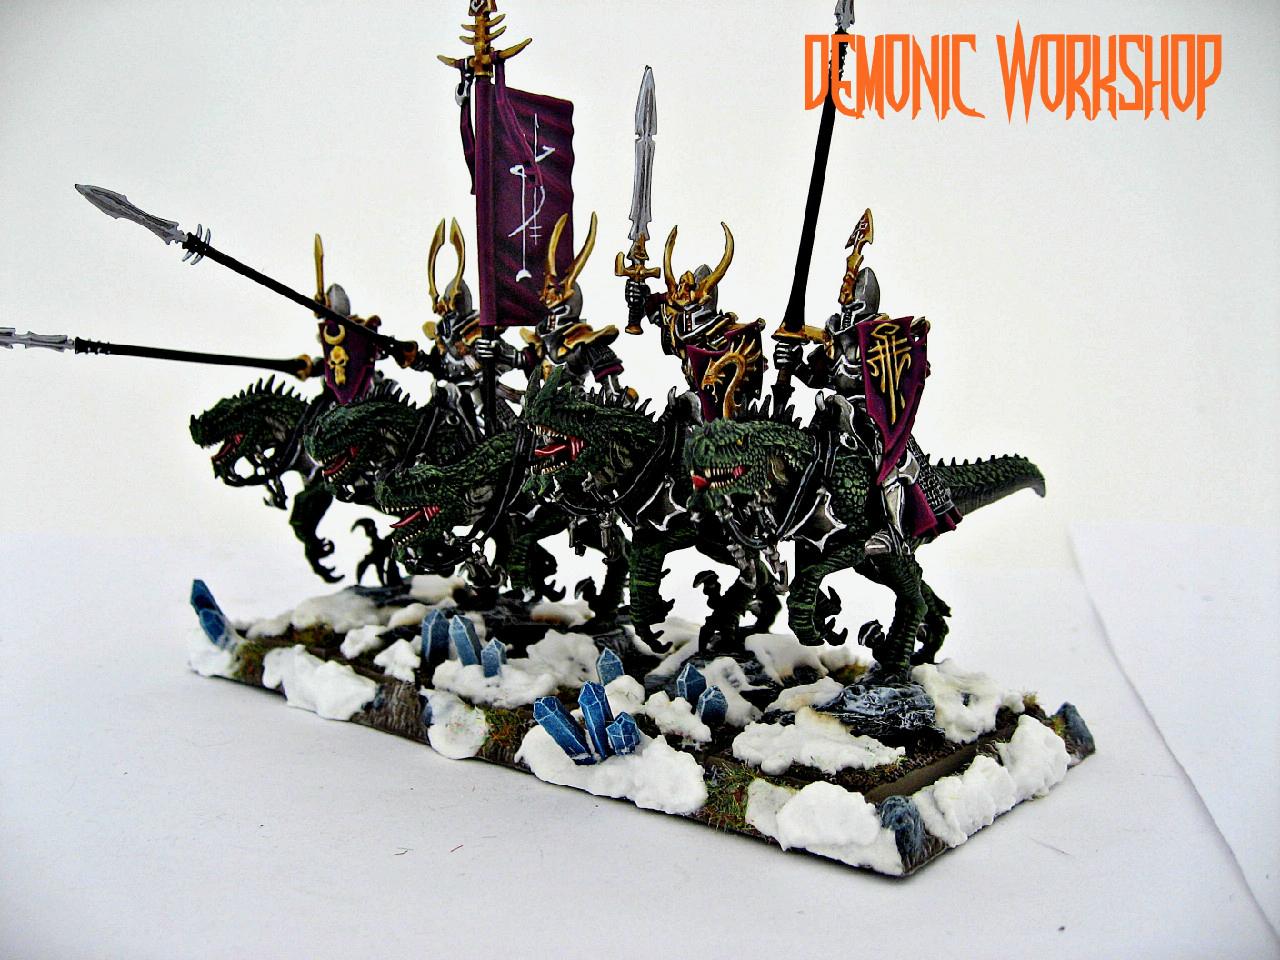 Dark Elves, Demonic Workshop, Warhammer 40,000